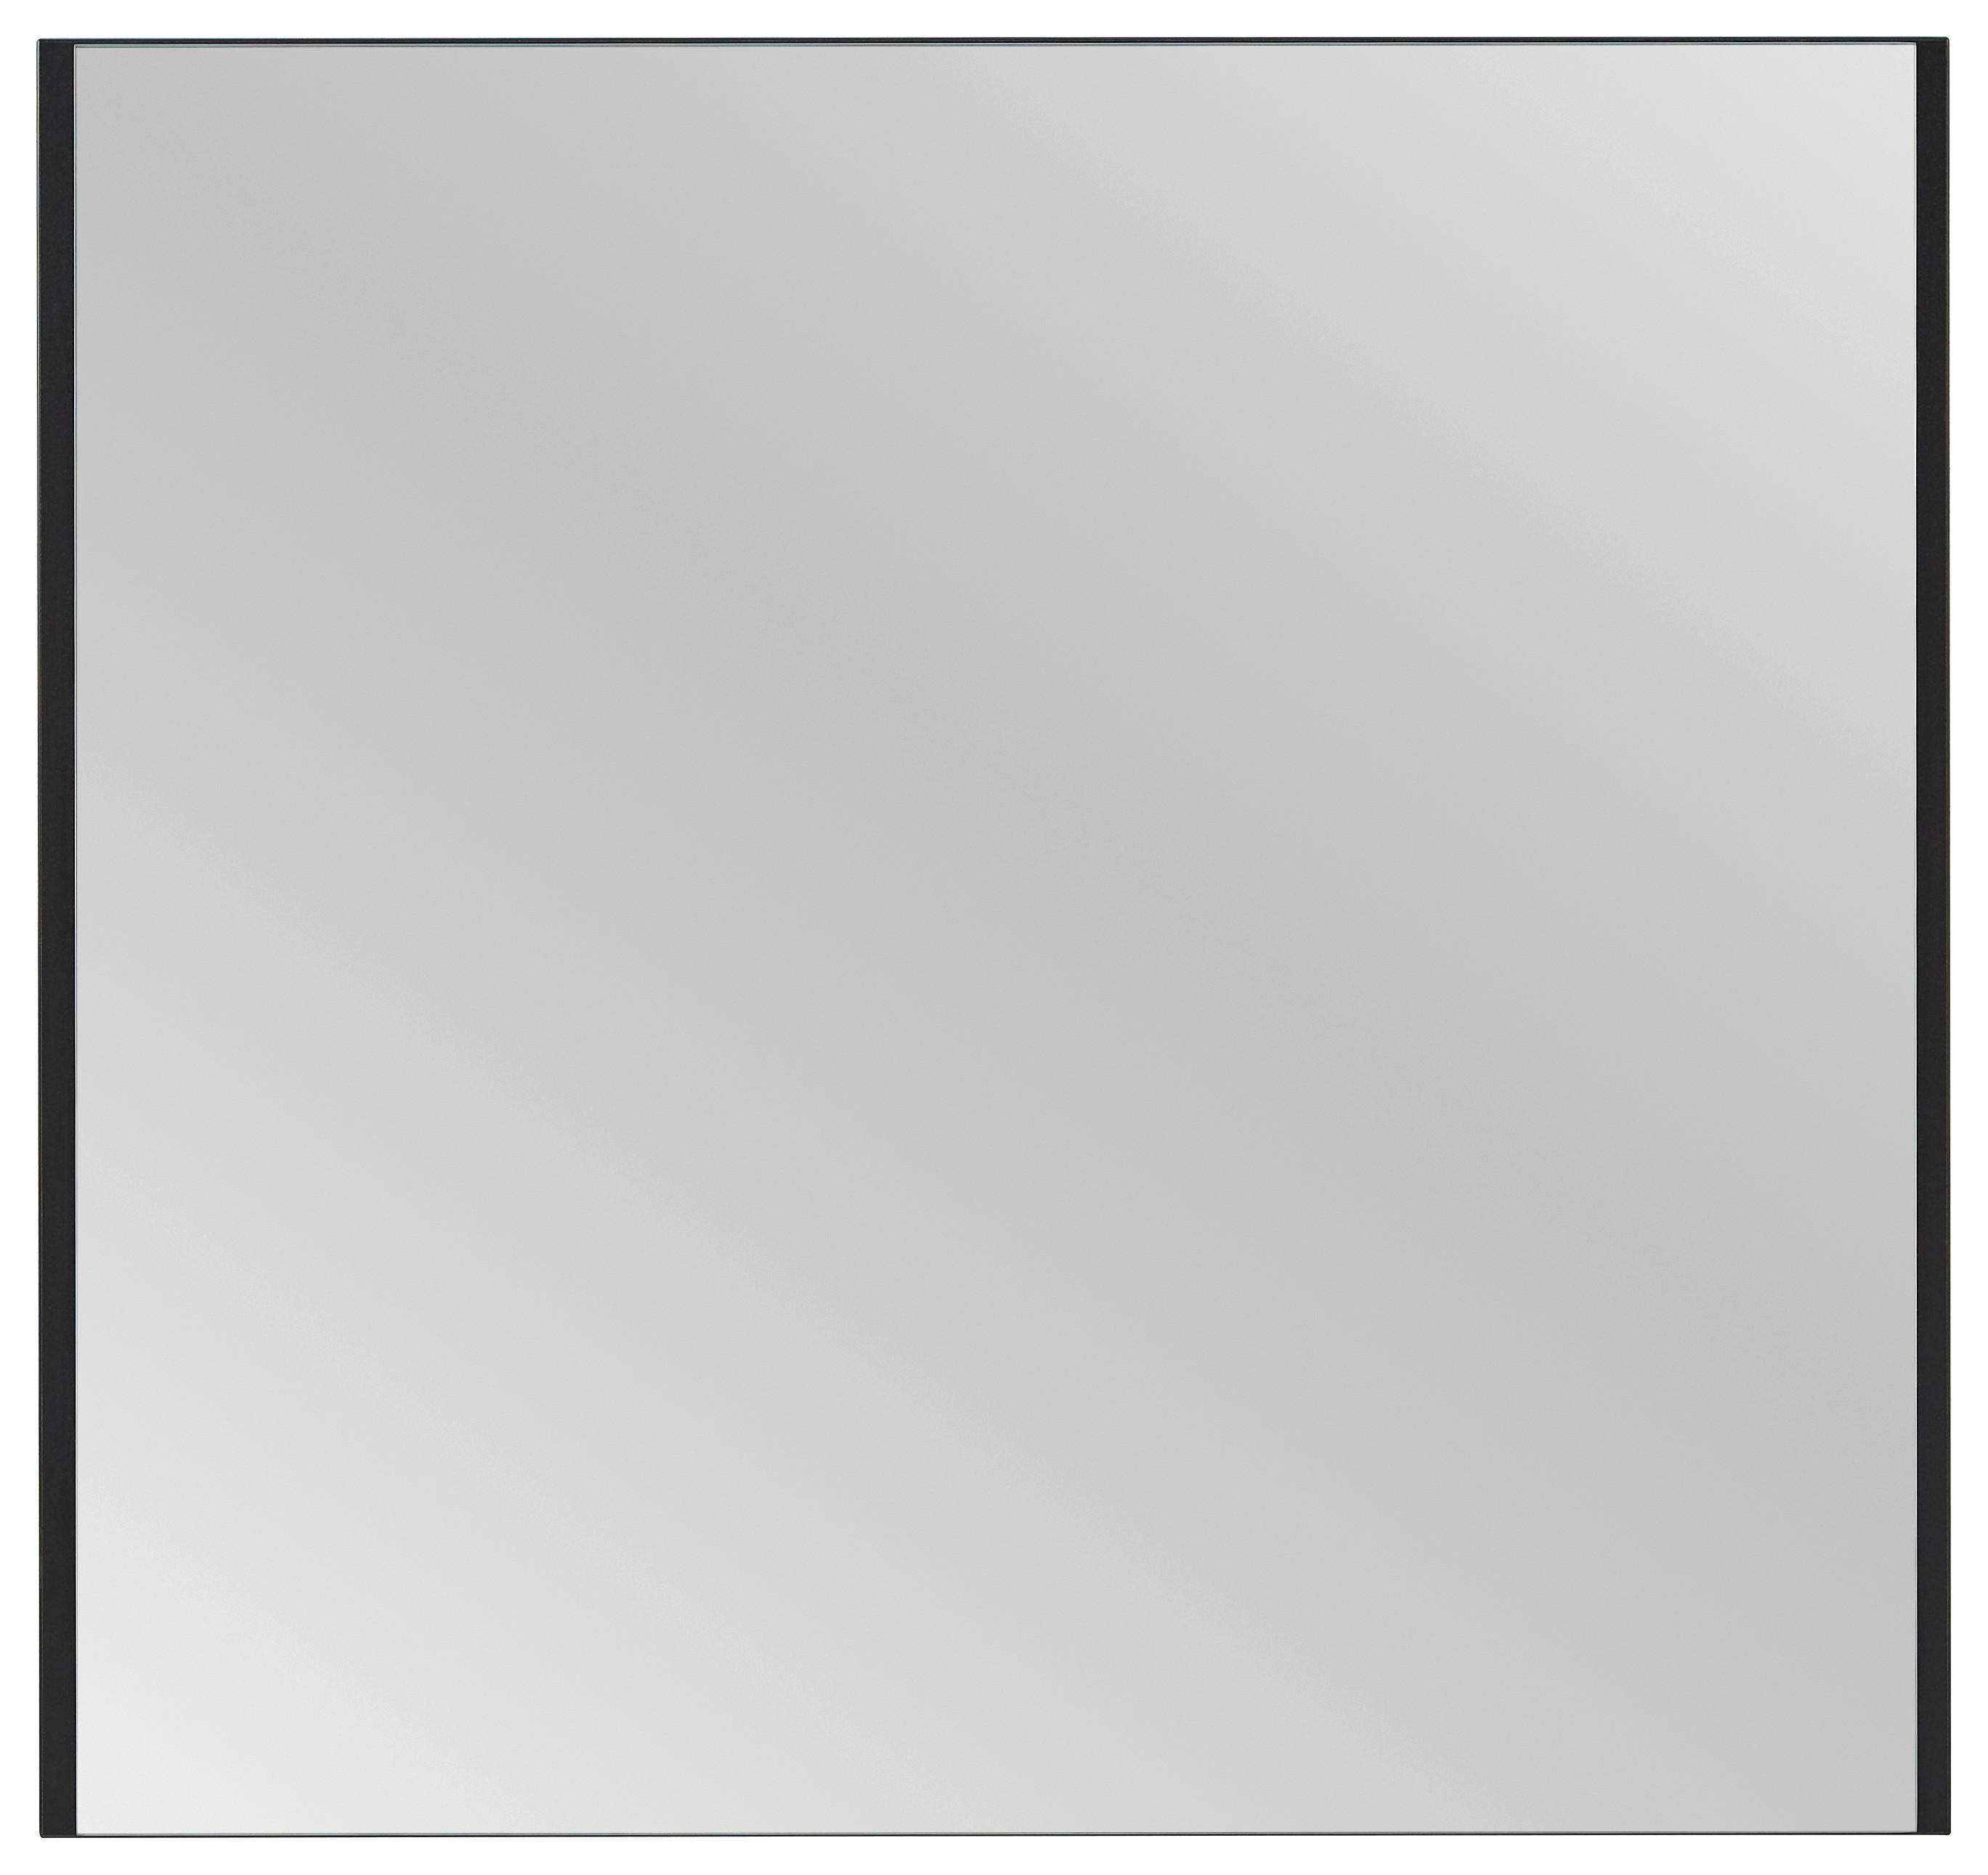 OGLINDĂ DE PERETE 87,6/82,4/2 cm    - negru, Konventionell, sticlă/material pe bază de lemn (87,6/82,4/2cm) - Voleo